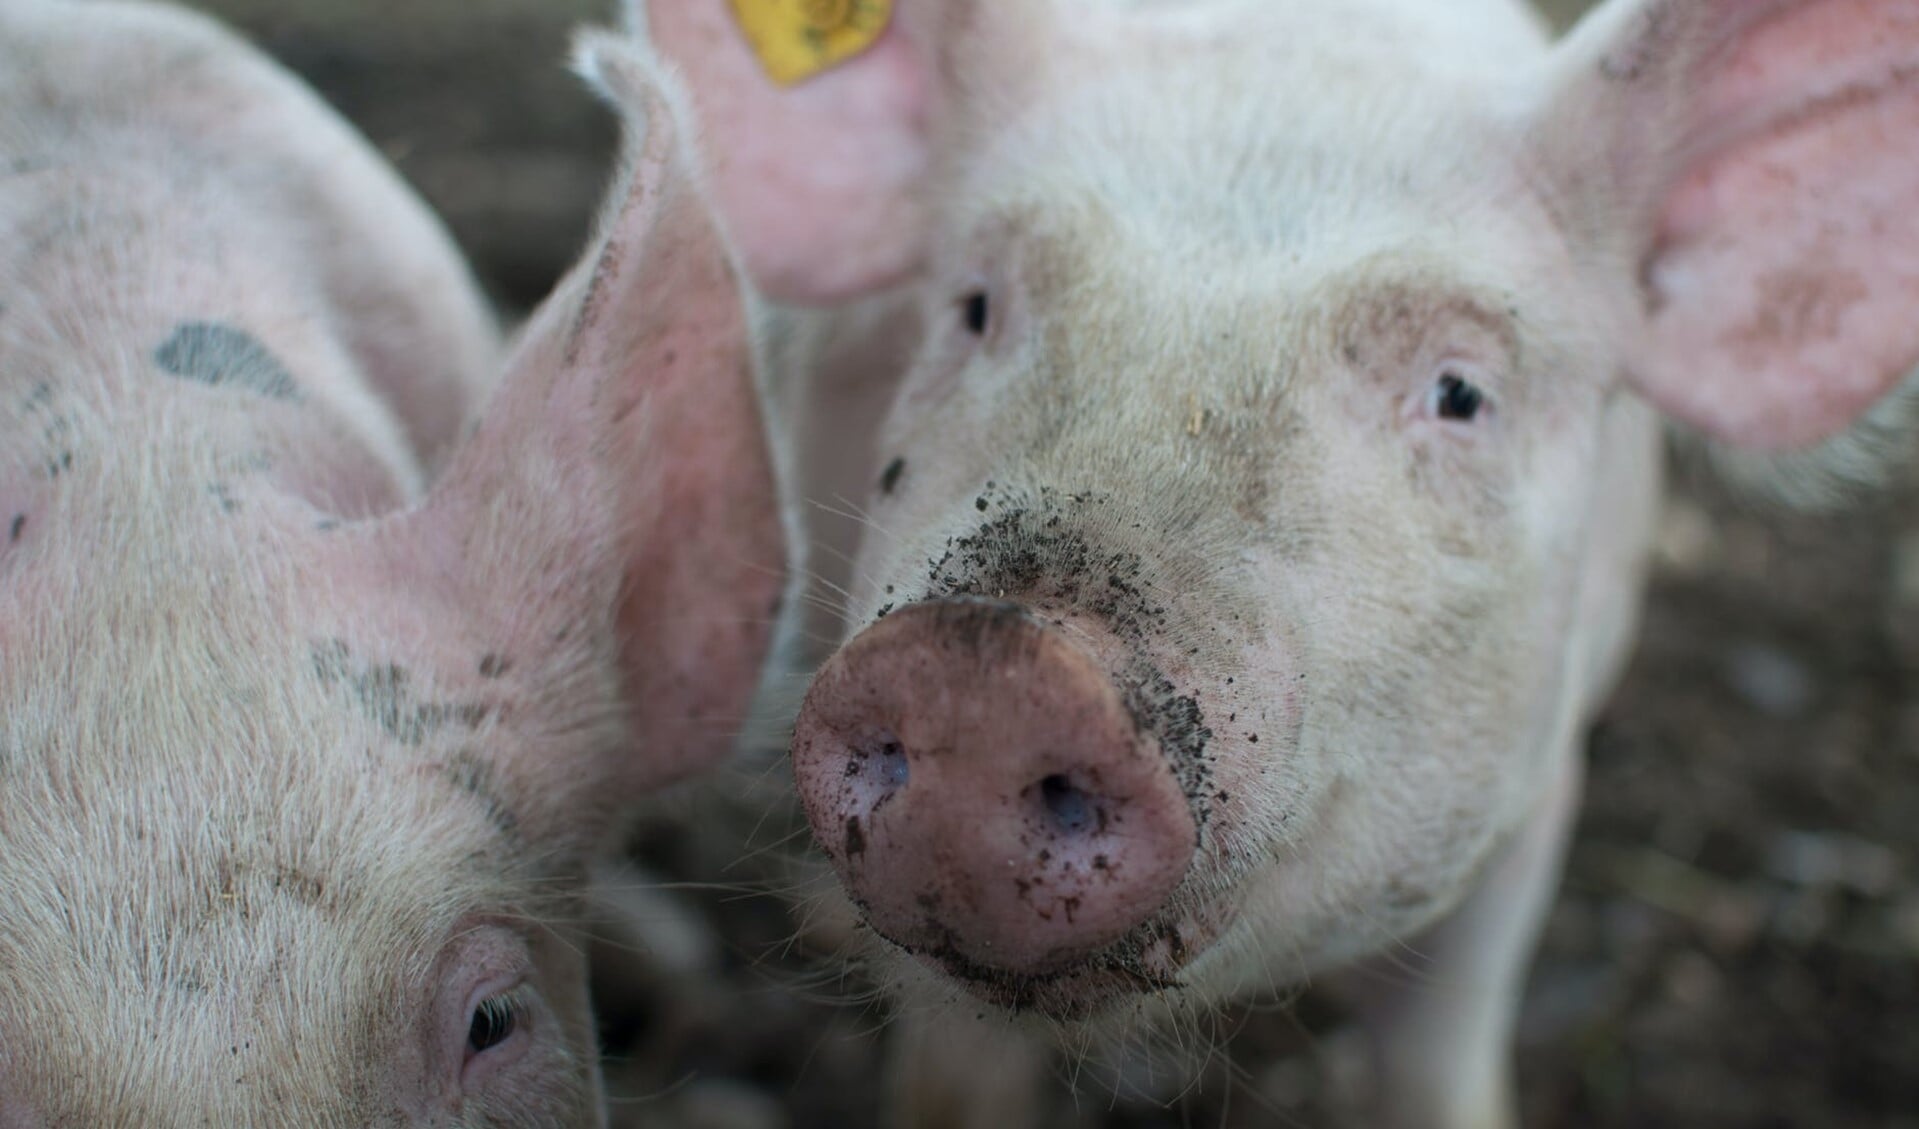 Vereniging Stopdestank Deurne is tegen de komst van een nieuwe stal met 3750 varkens.